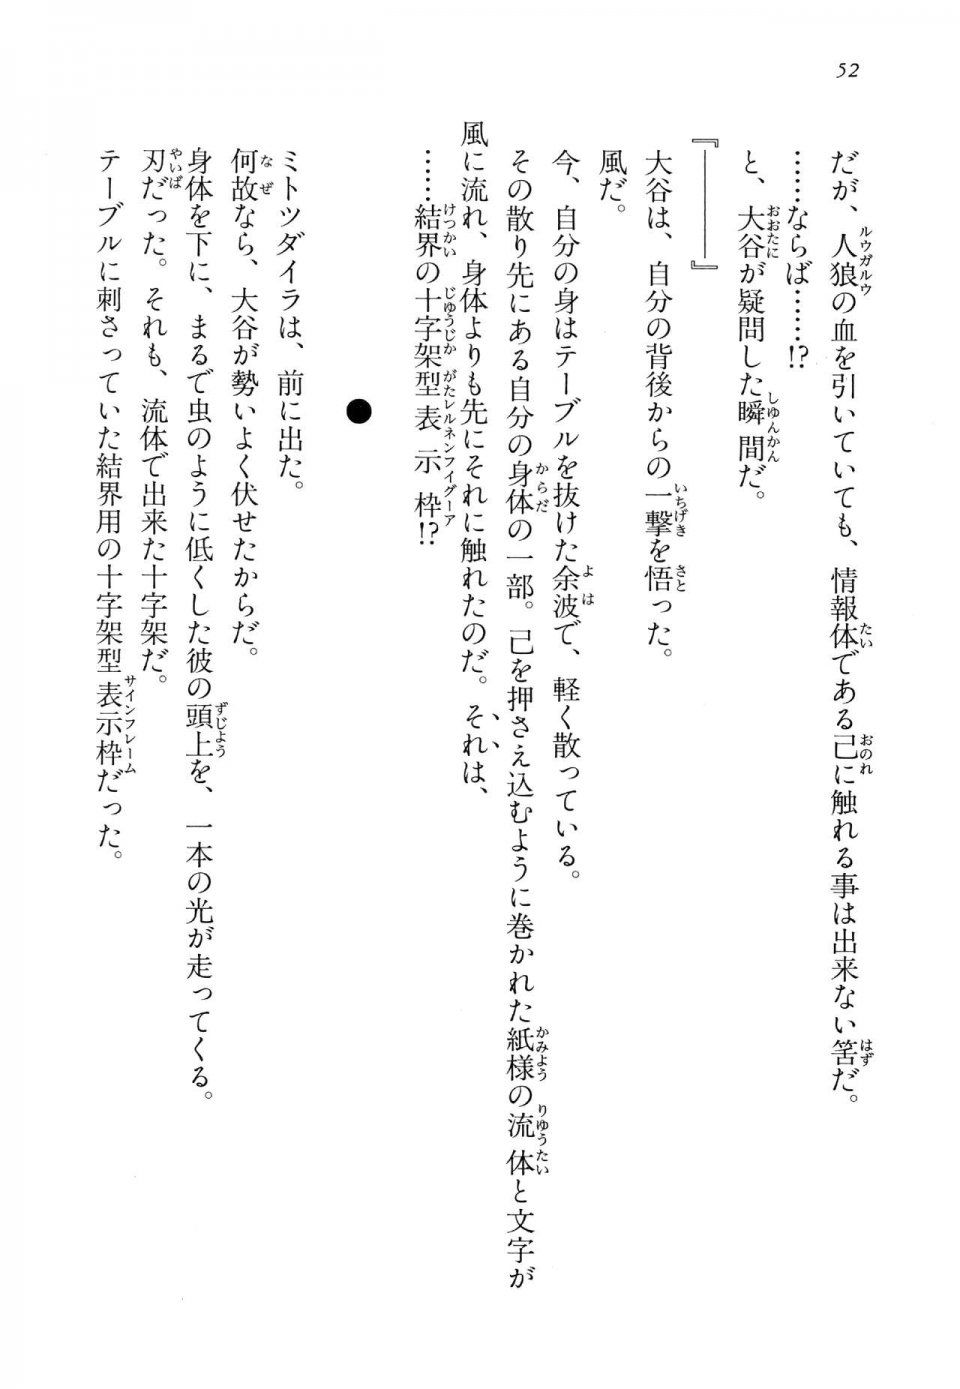 Kyoukai Senjou no Horizon LN Vol 14(6B) - Photo #52